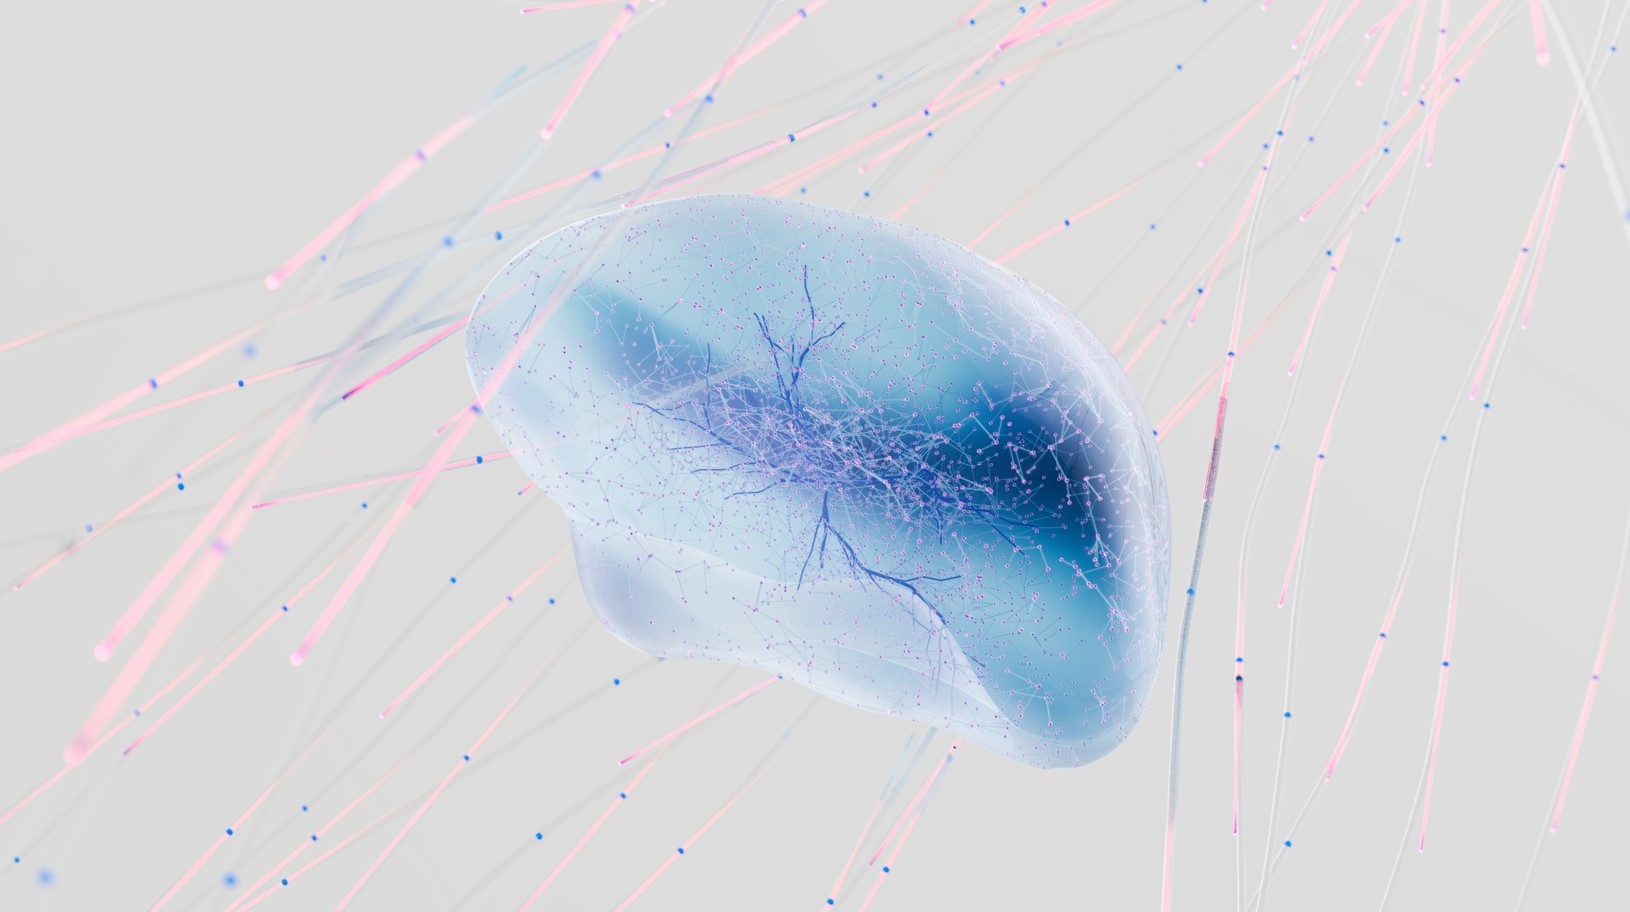 El análisis de redes biológicas permite entender la complejidad de la esclerosis múltiple